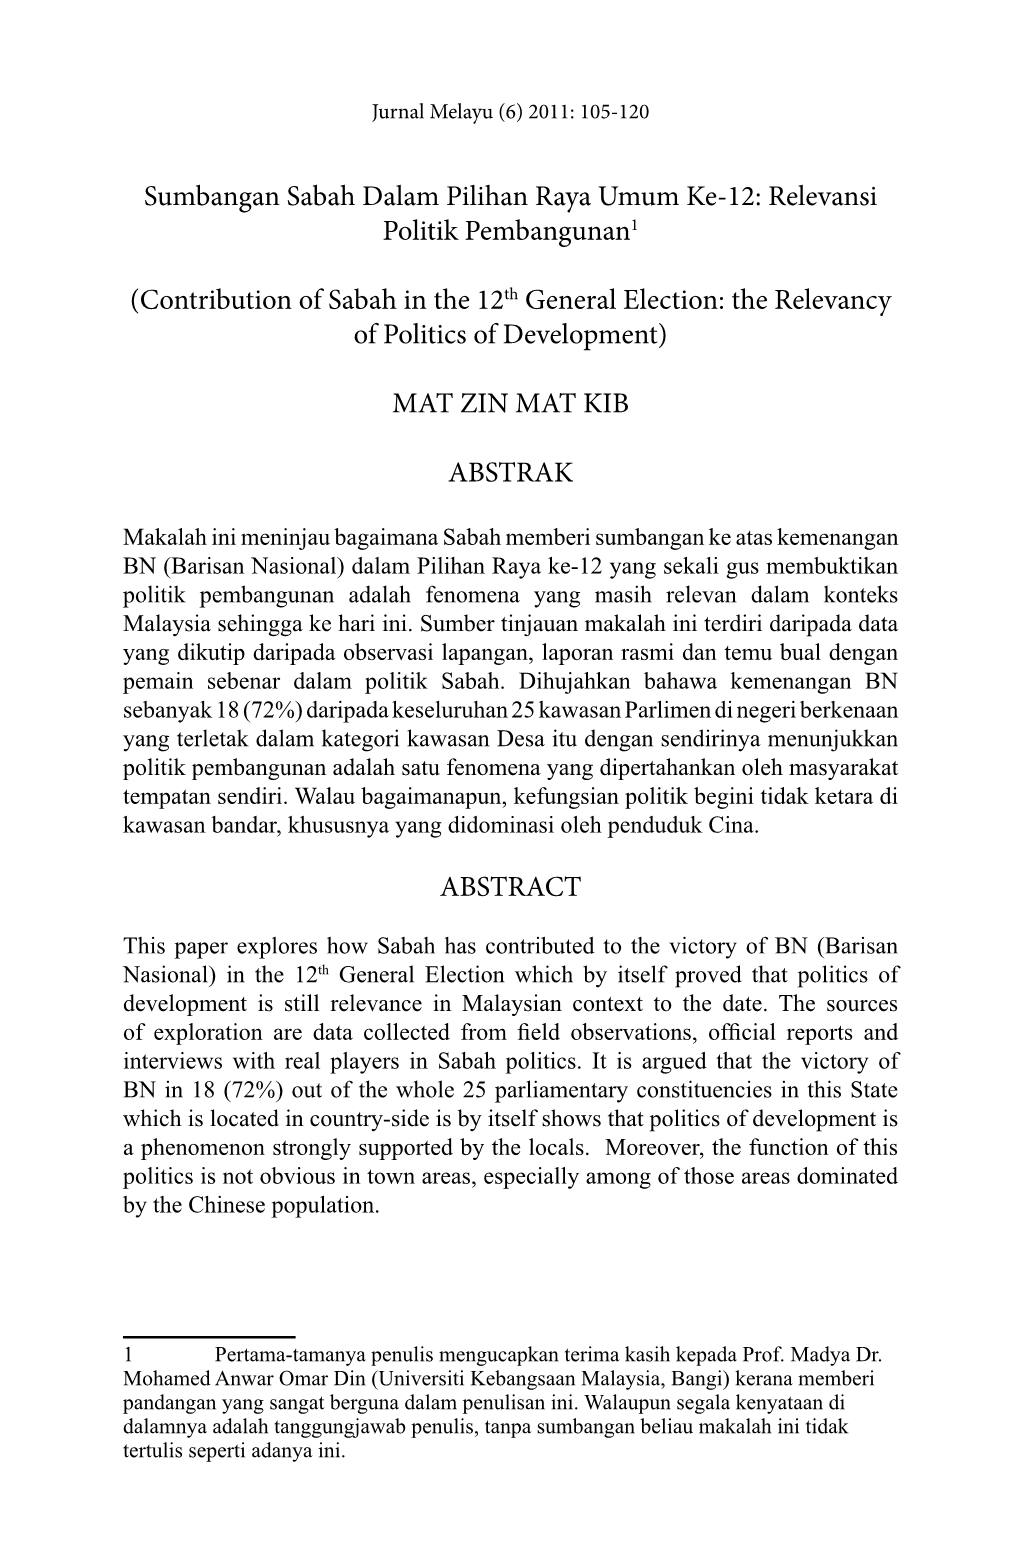 Relevansi Politik Pembangunan1 (Contribution of Sabah in the 12Th